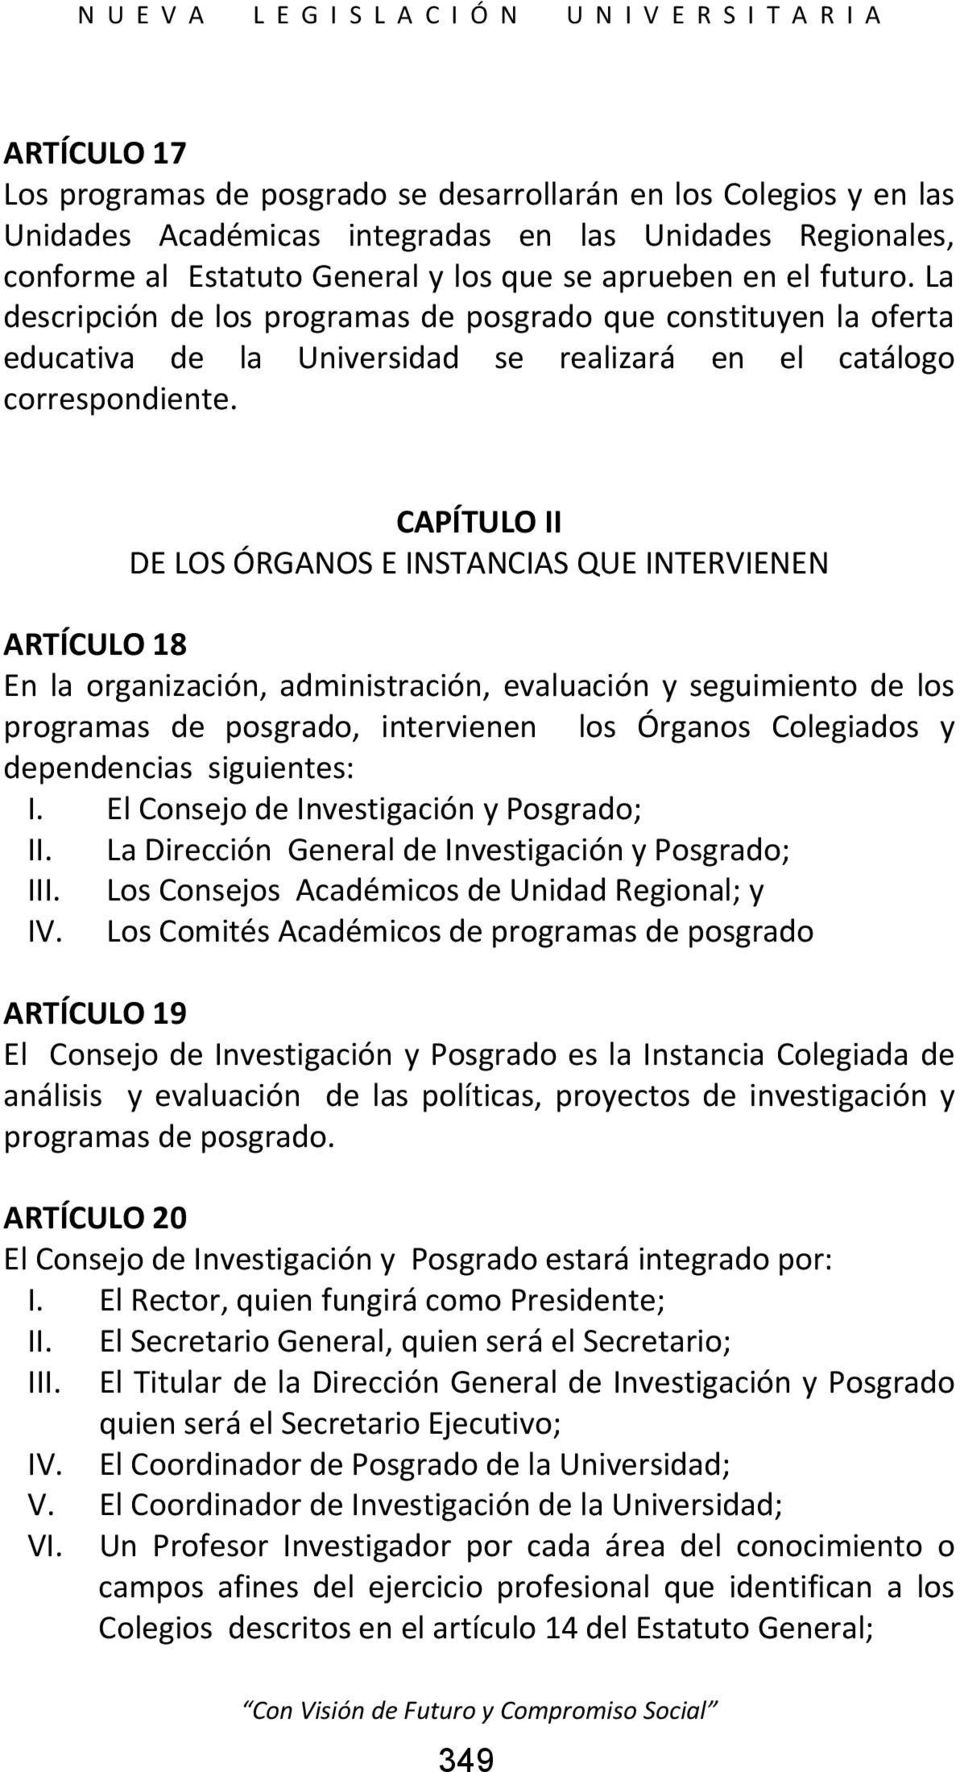 CAPÍTULO II DE LOS ÓRGANOS E INSTANCIAS QUE INTERVIENEN ARTÍCULO 18 En la organización, administración, evaluación y seguimiento de los programas de posgrado, intervienen los Órganos Colegiados y